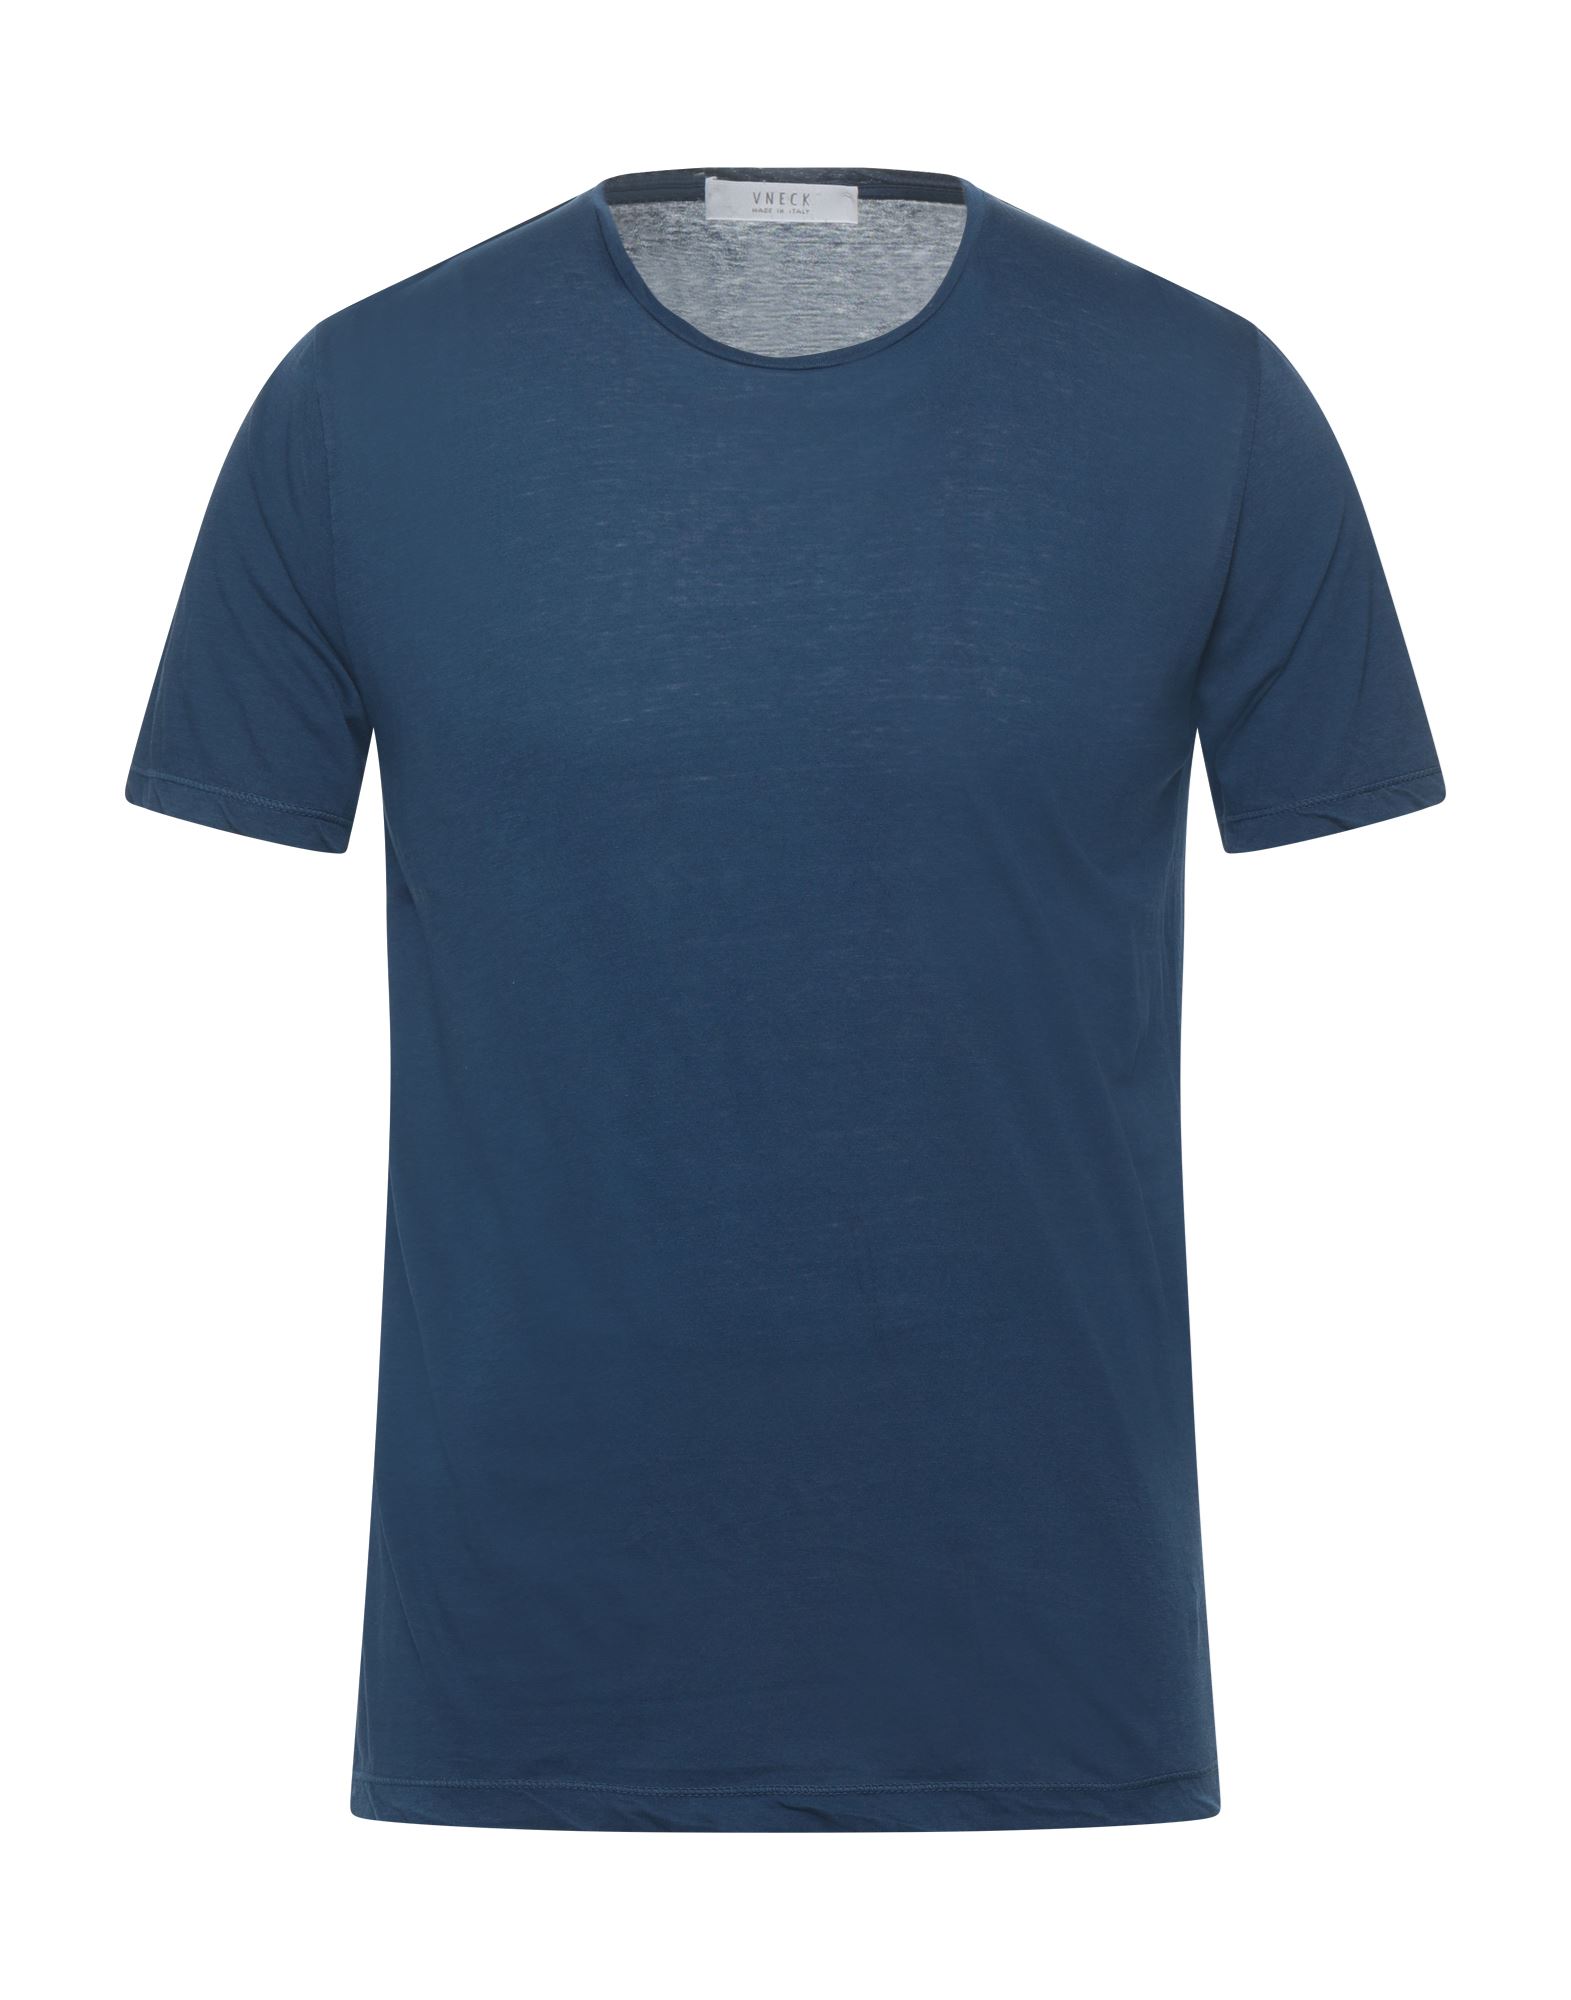 VNECK T-shirts Herren Blau von VNECK